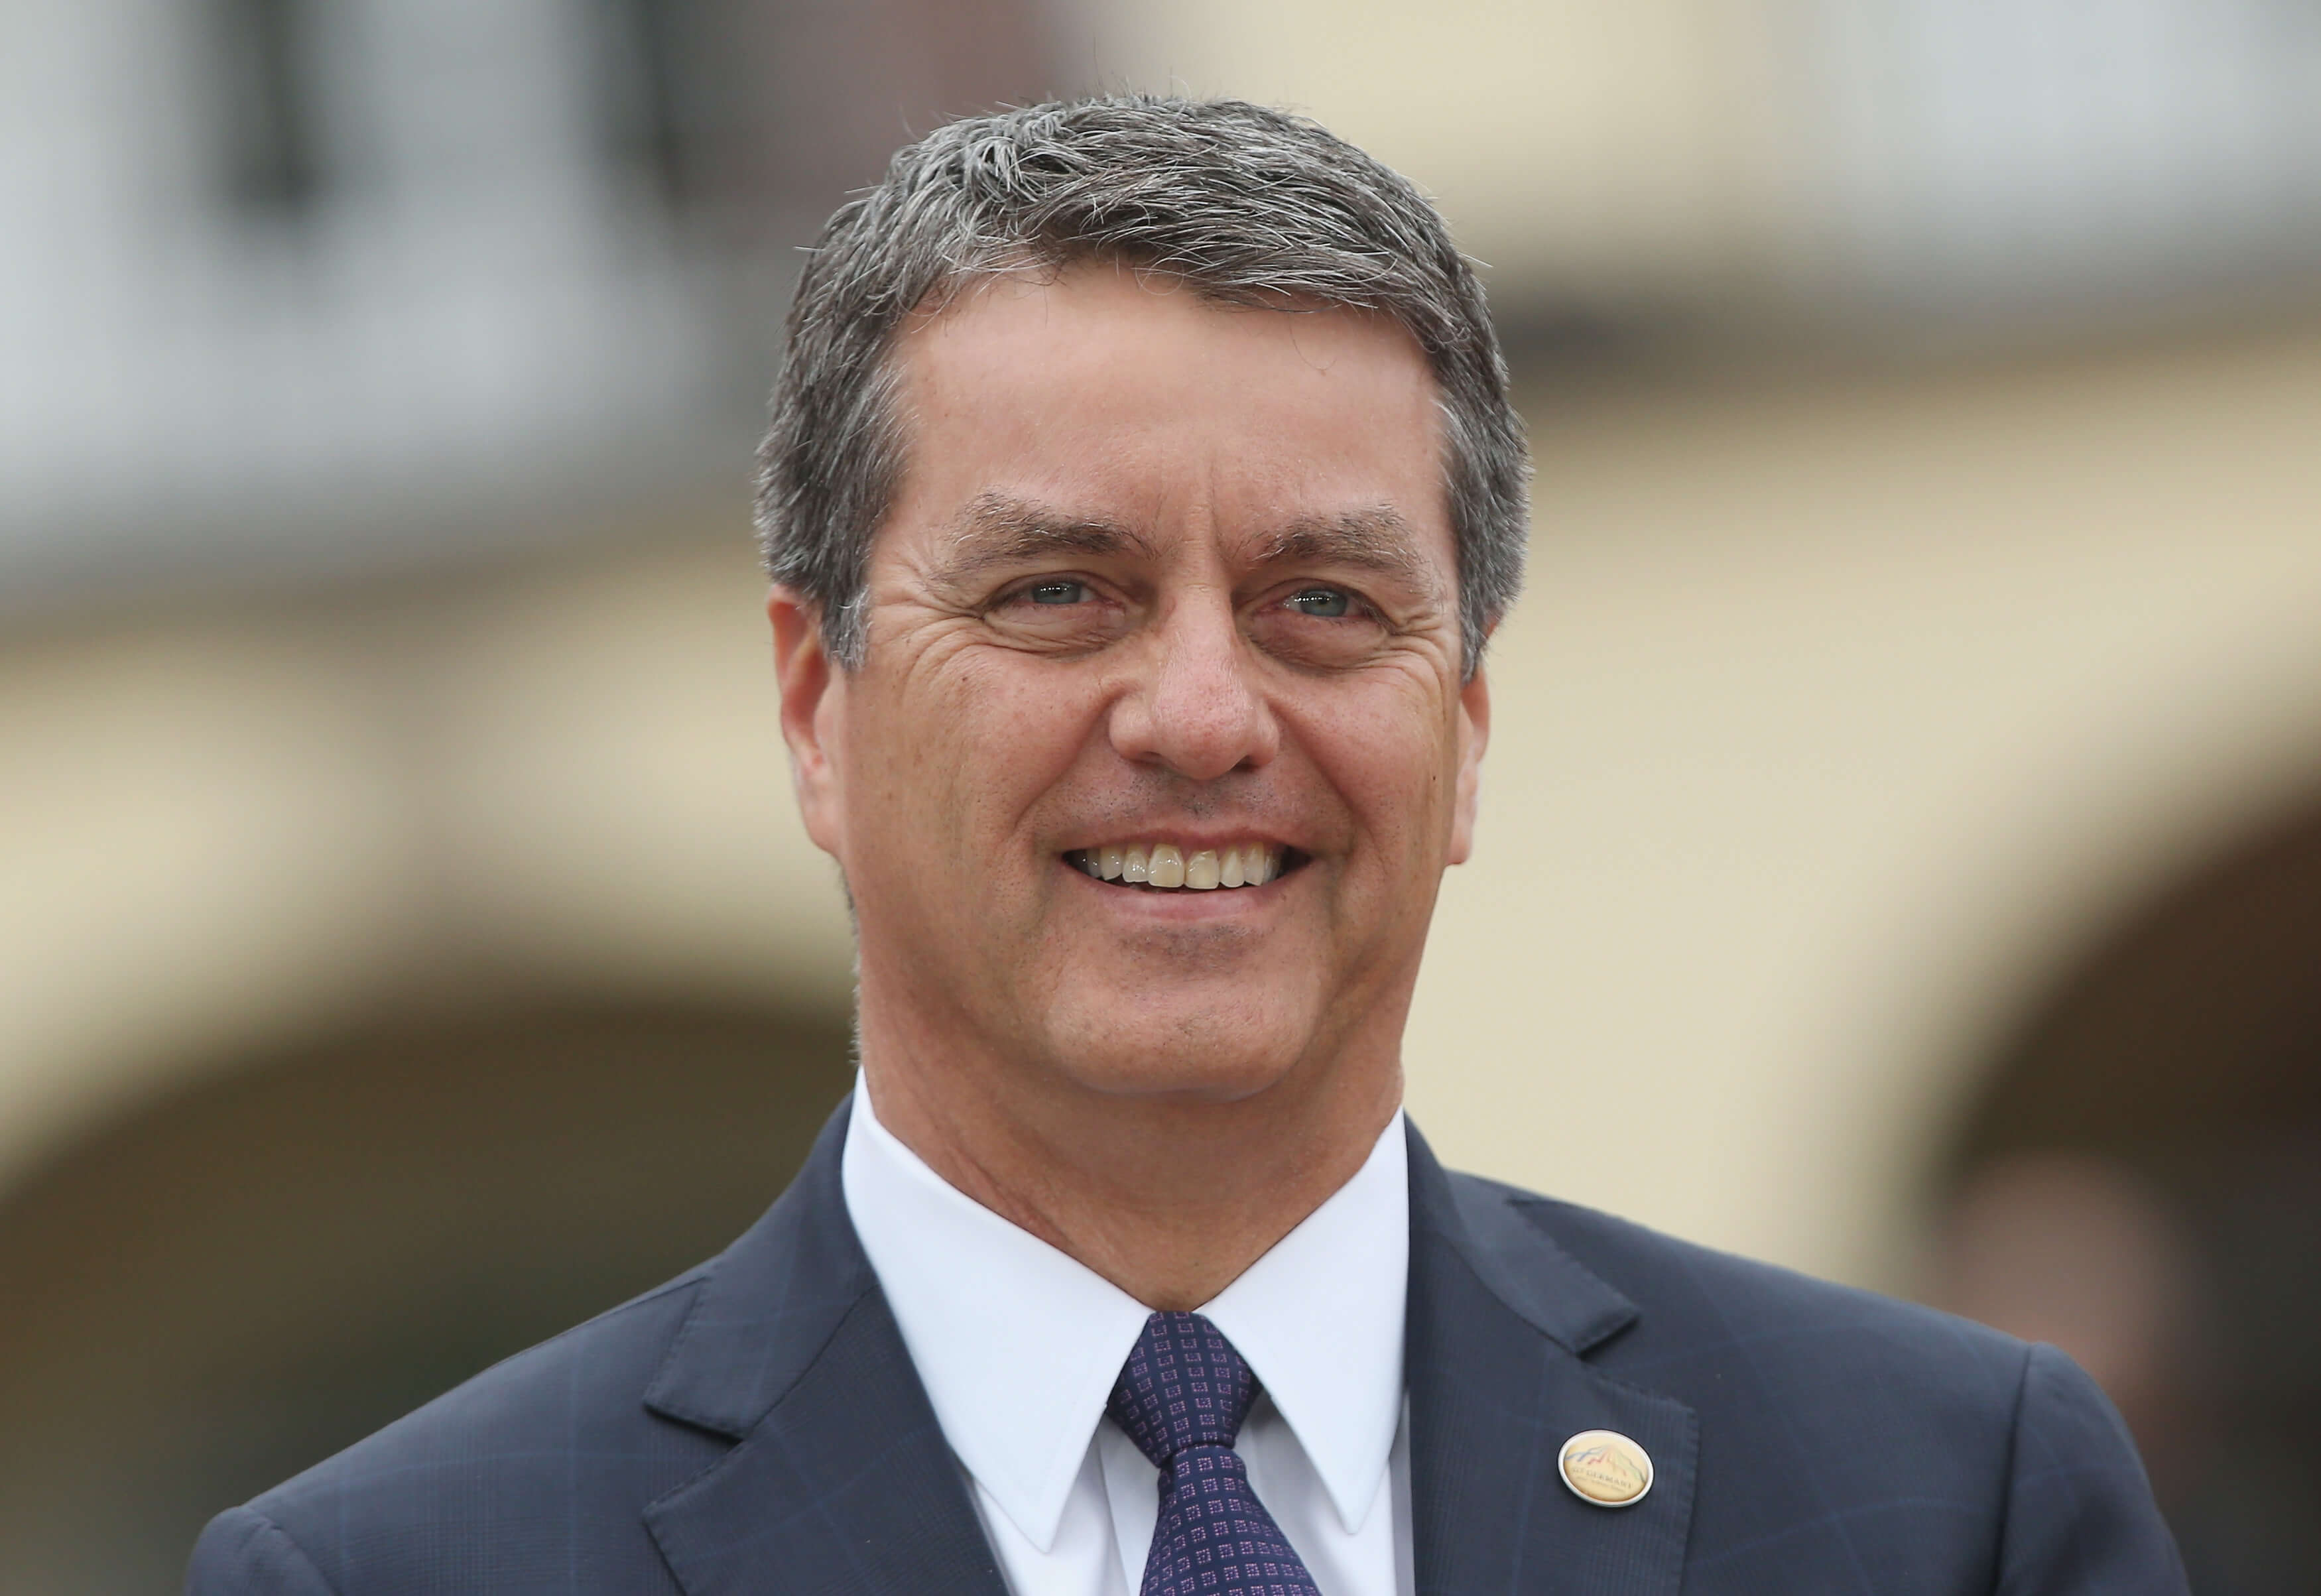 Roberto Azevedo, director general de la Organización Mundial del Comercio (OMC) (Getty Images)